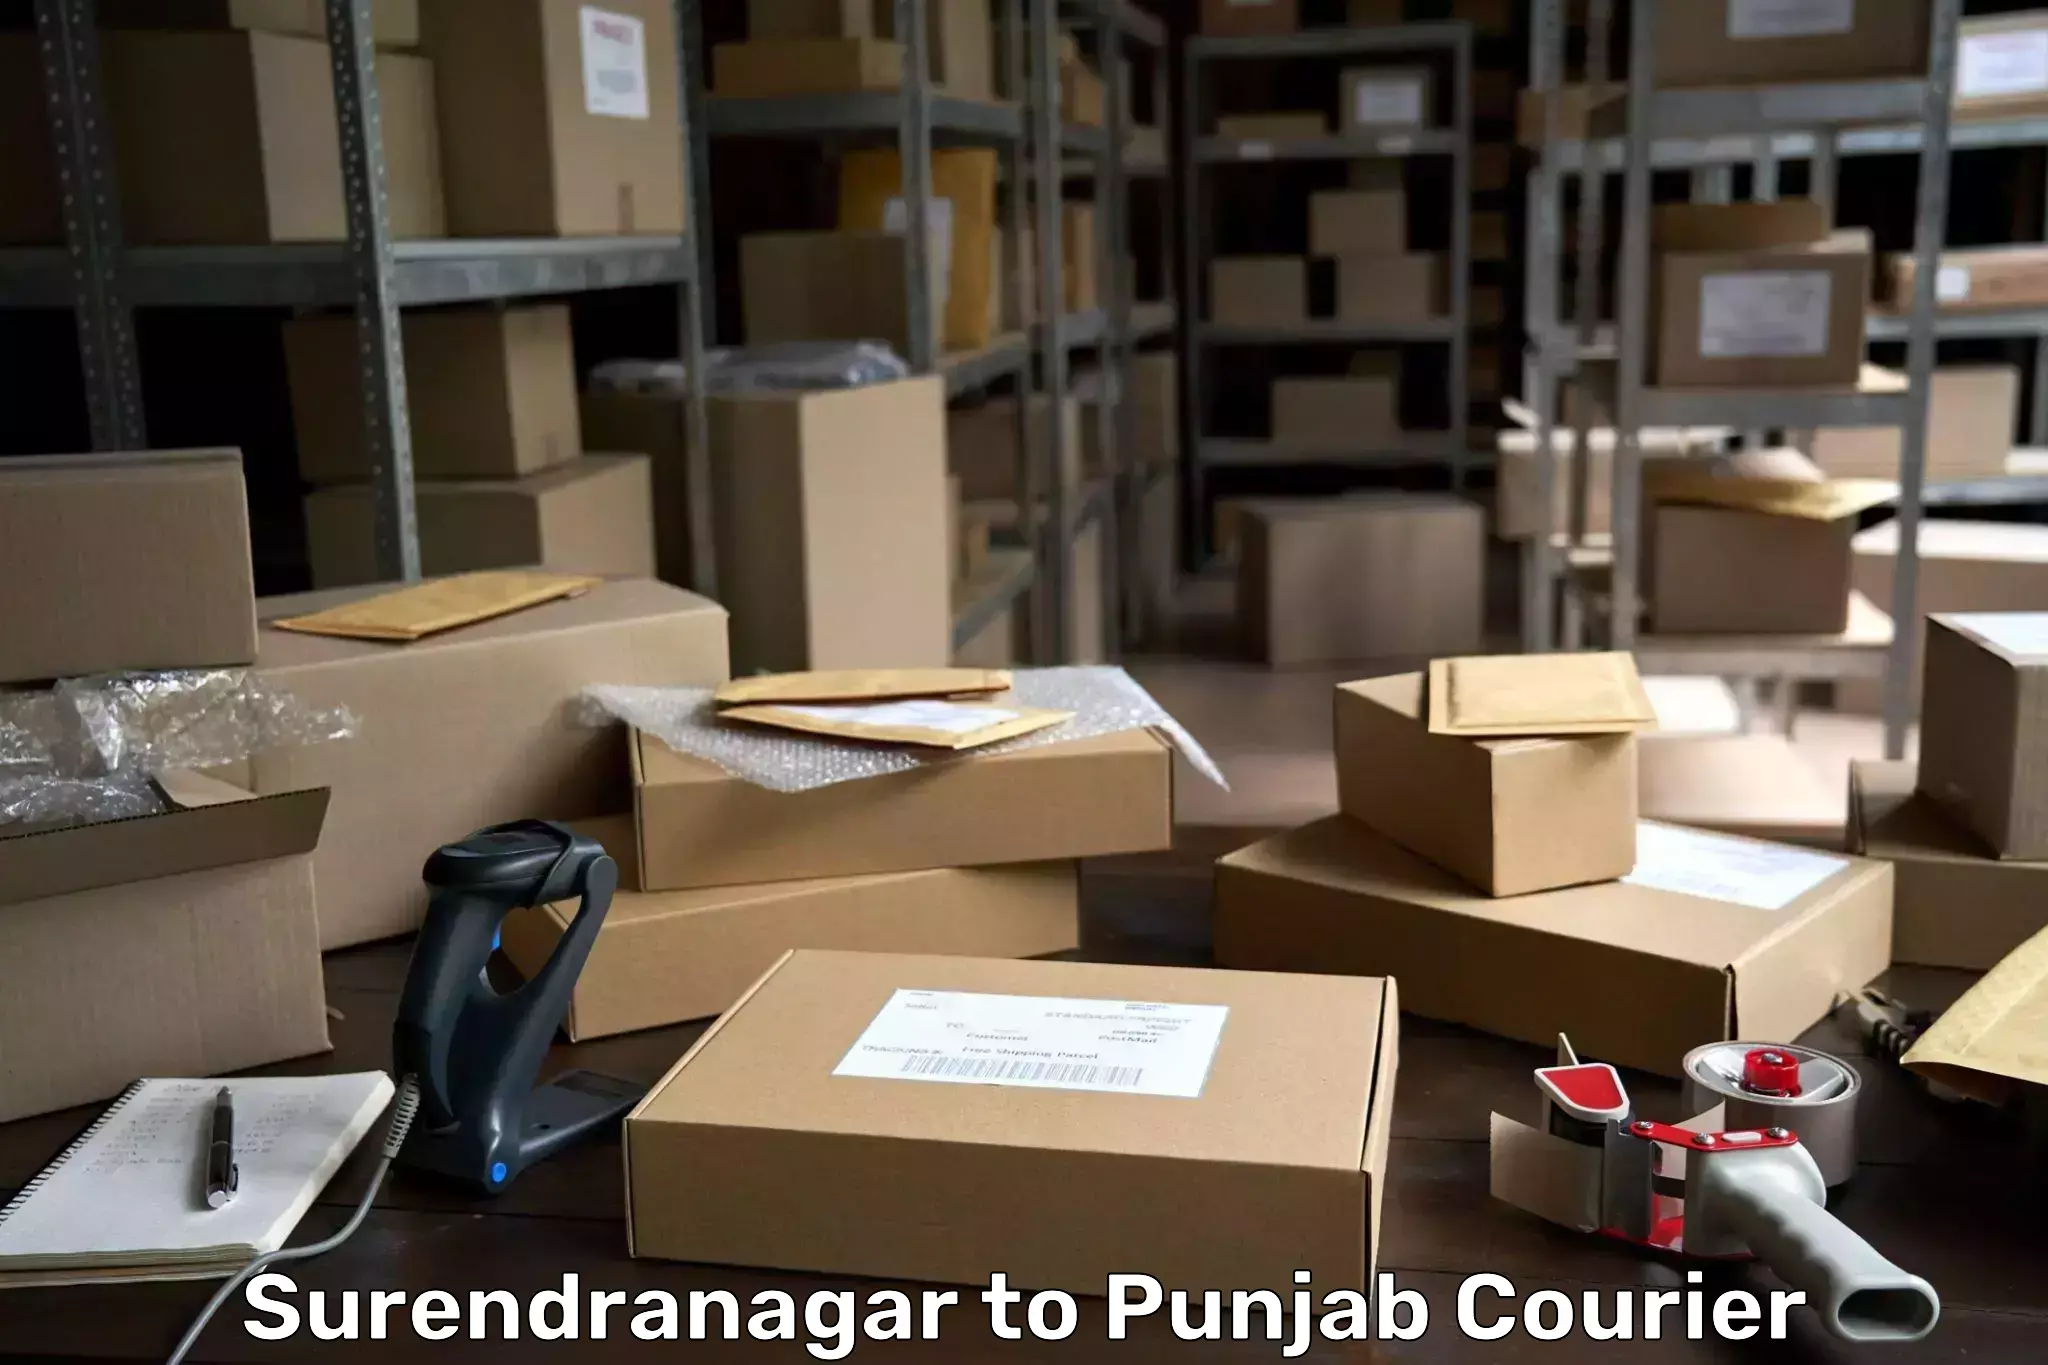 Courier service efficiency Surendranagar to Sirhind Fatehgarh